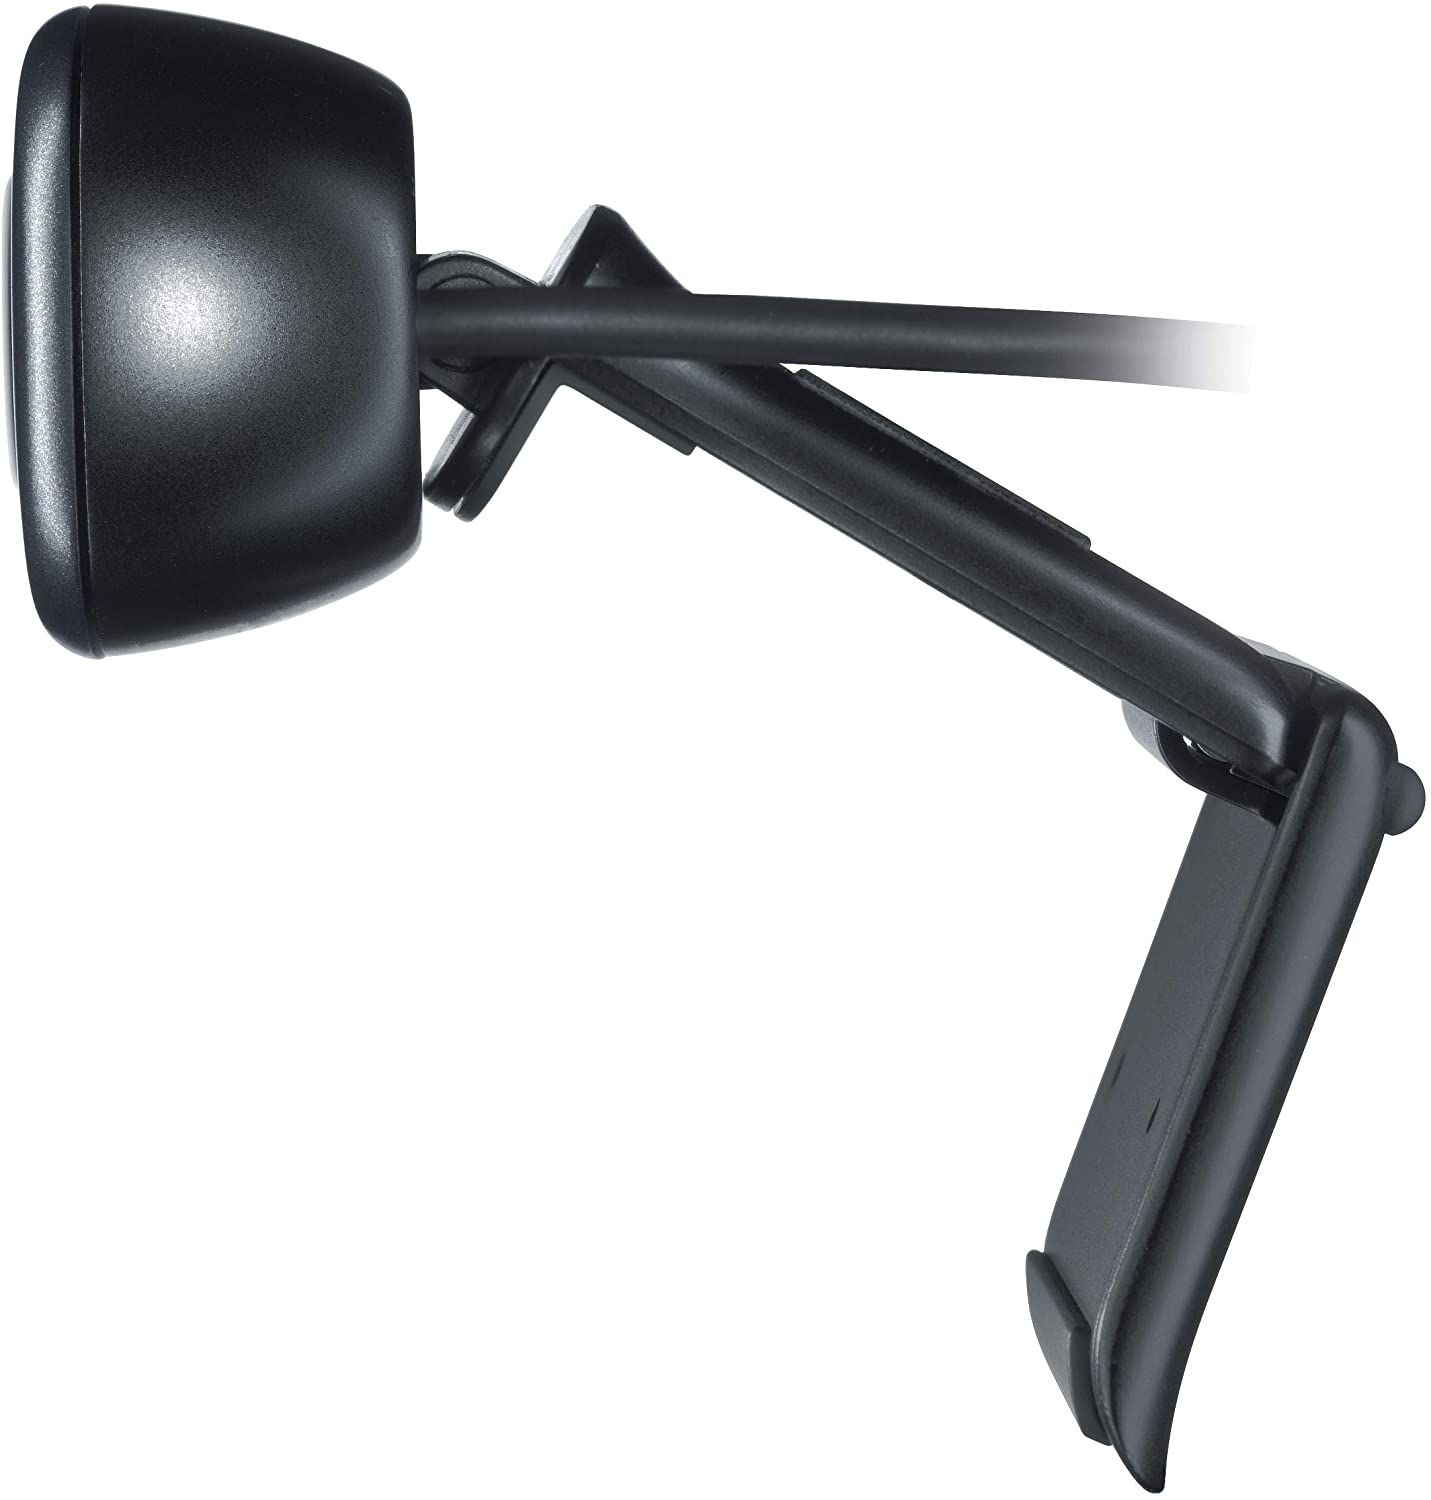 Logitech HD Webcam C310 mount